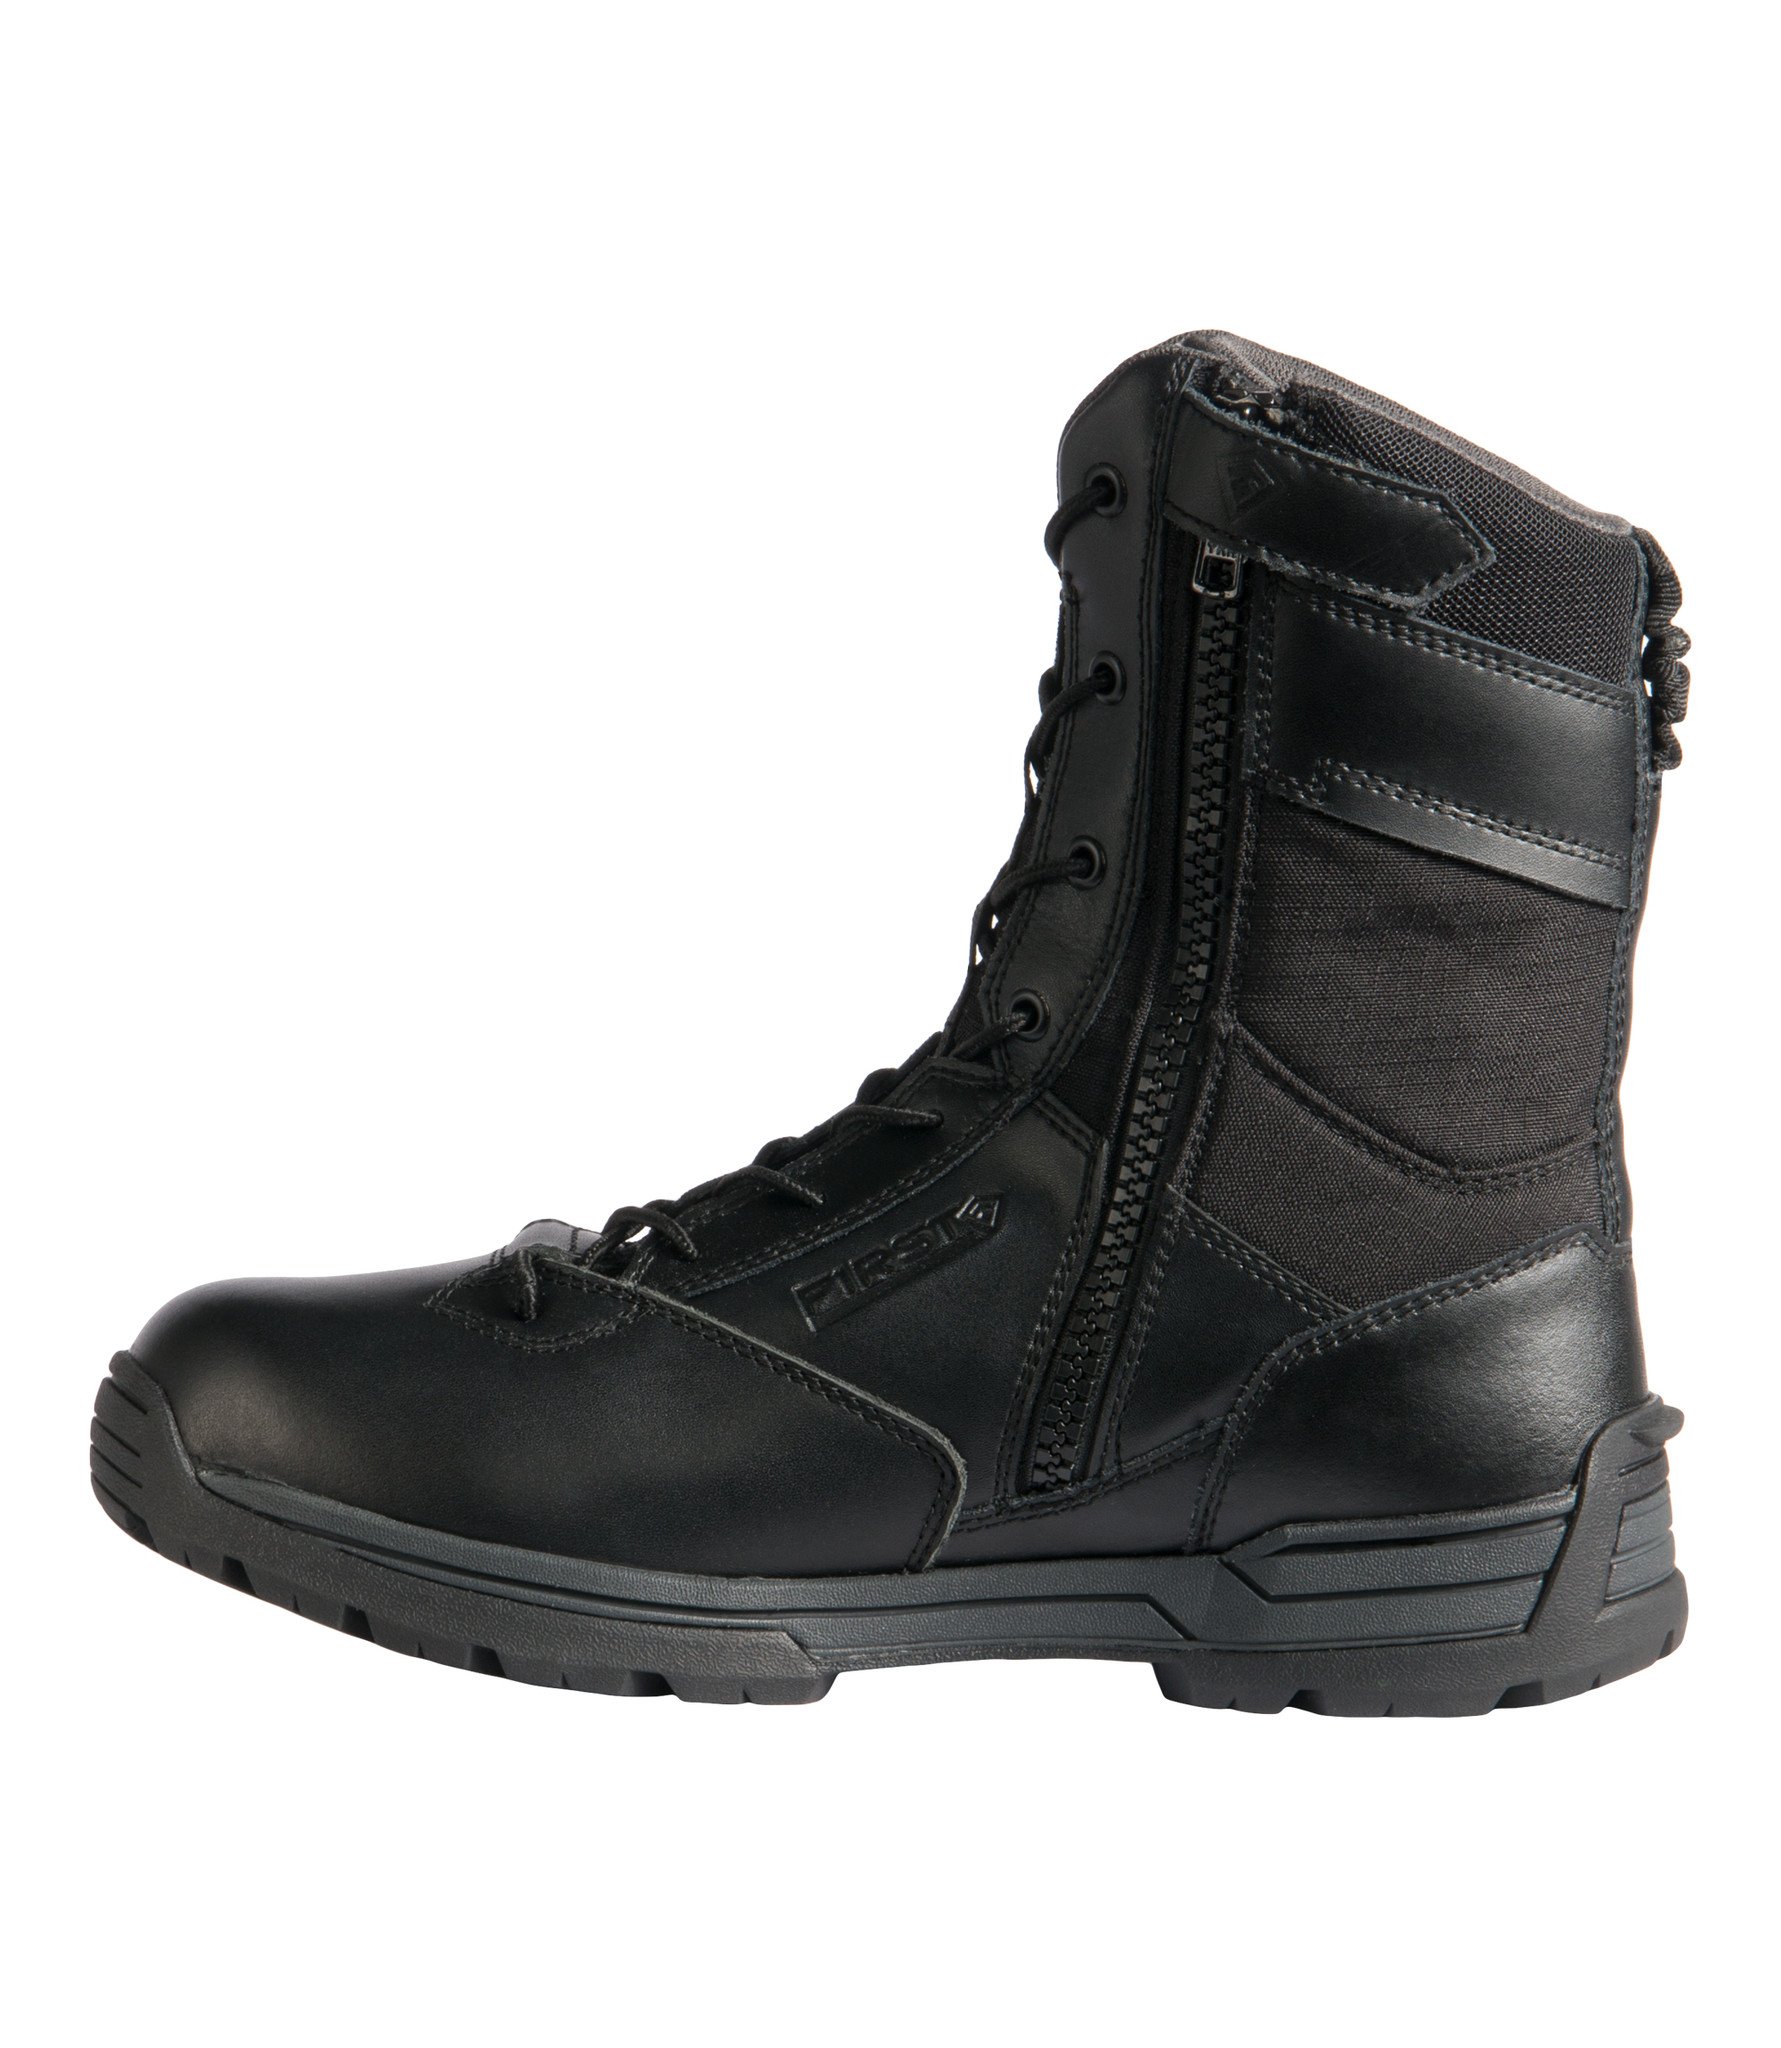 Men's 8" Waterproof Side Zip Duty Boot (Black)